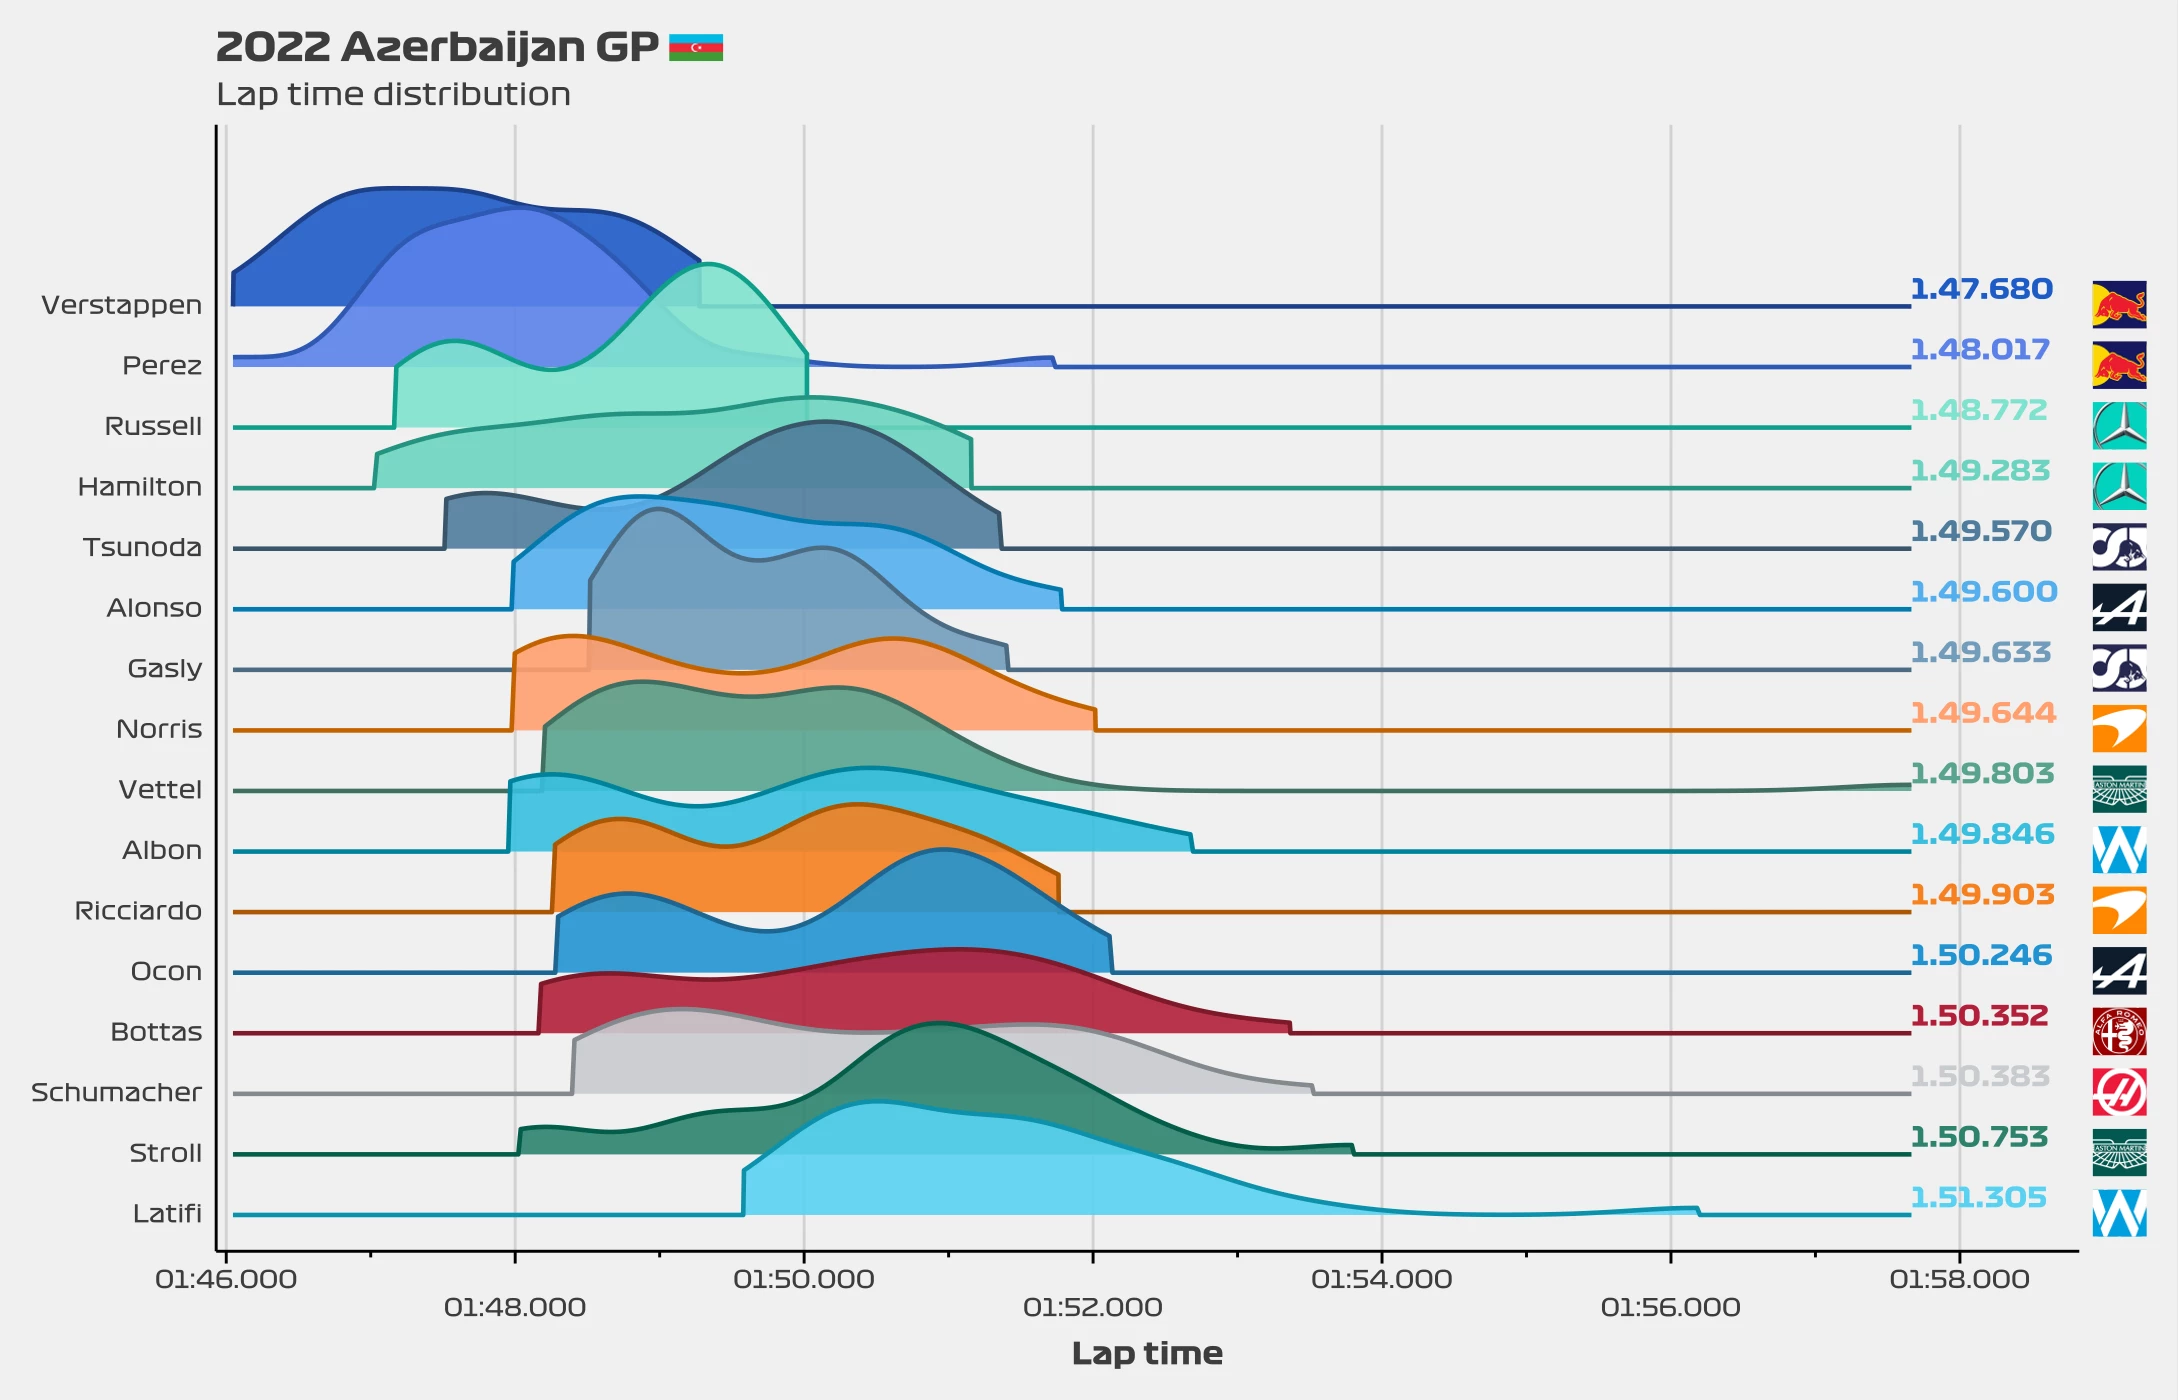 Race pace: Lap time distribution